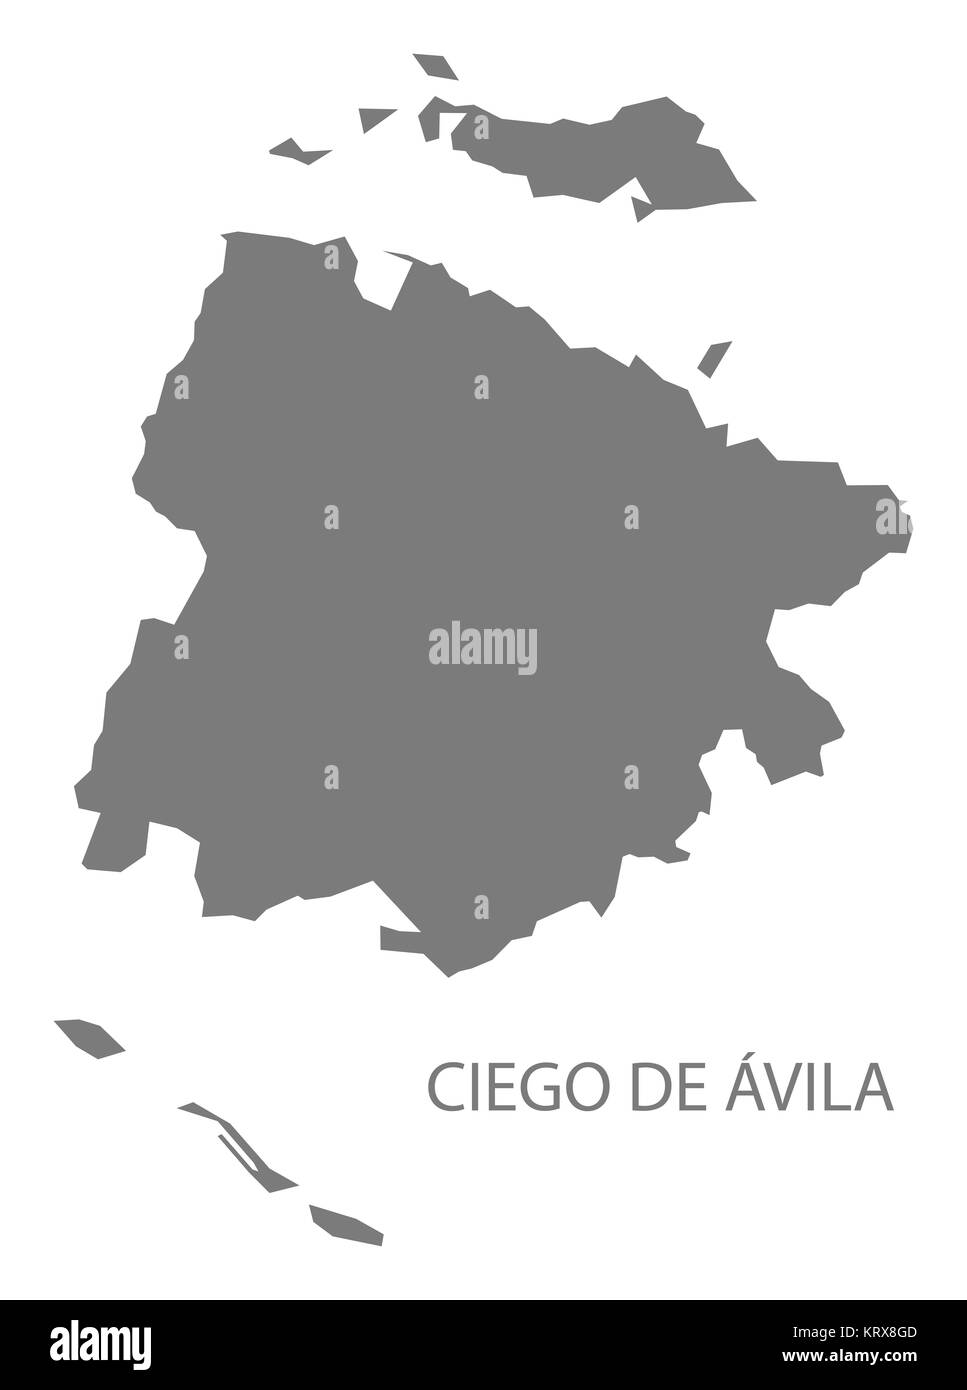 Ciego de Avila Cuba Map grey Stock Photo